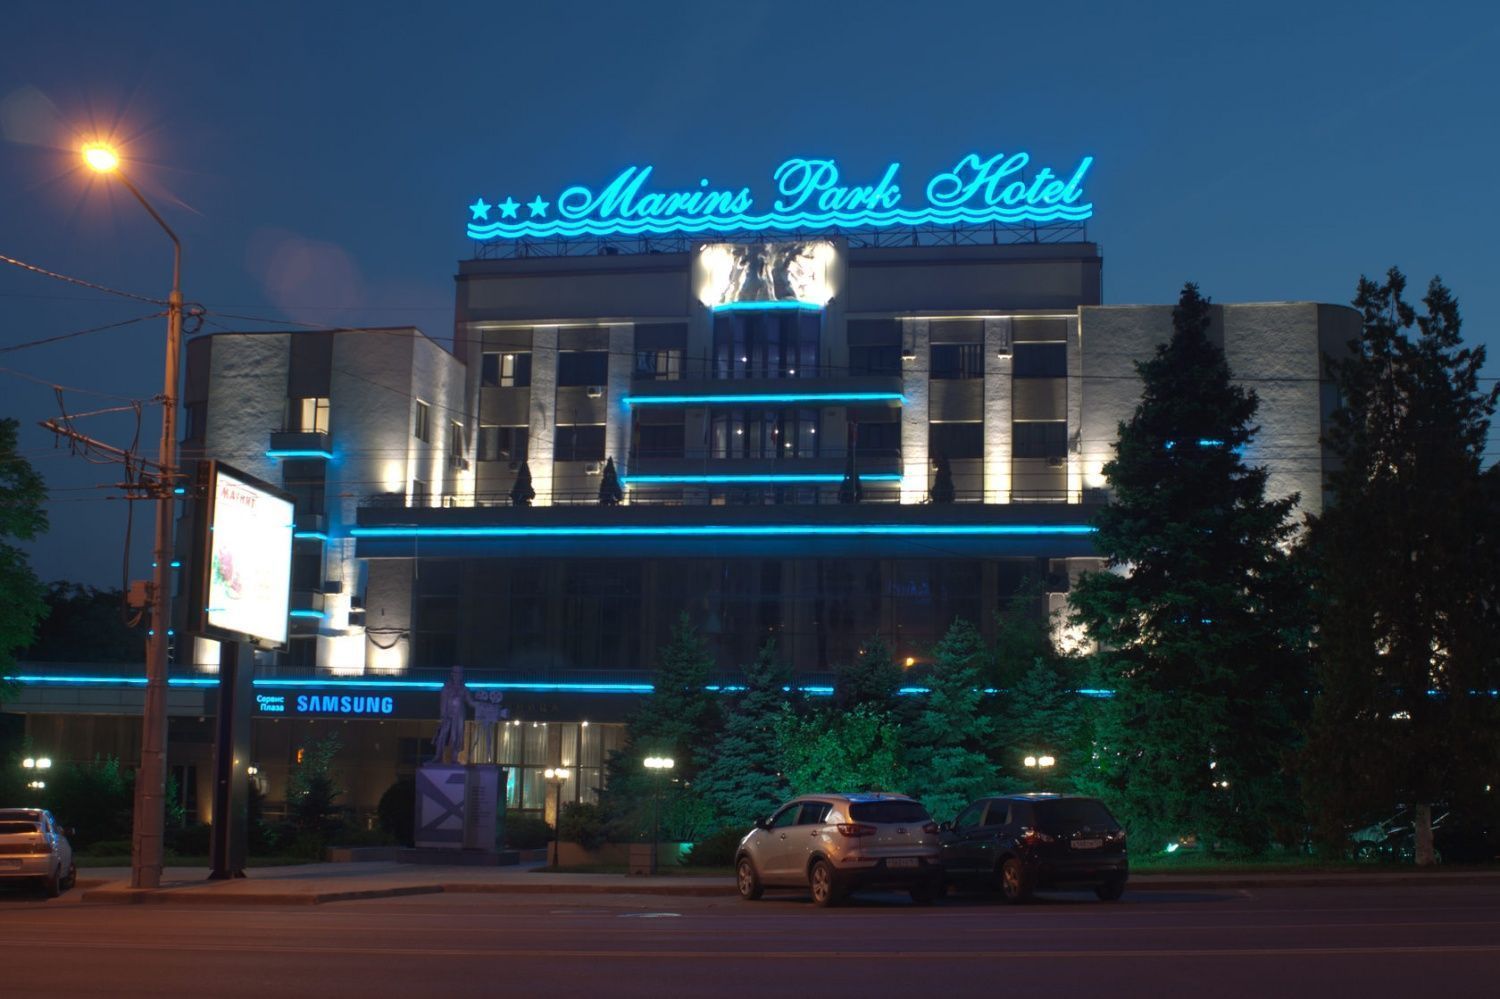 Facade Lighting of "Marins Park Hotel"